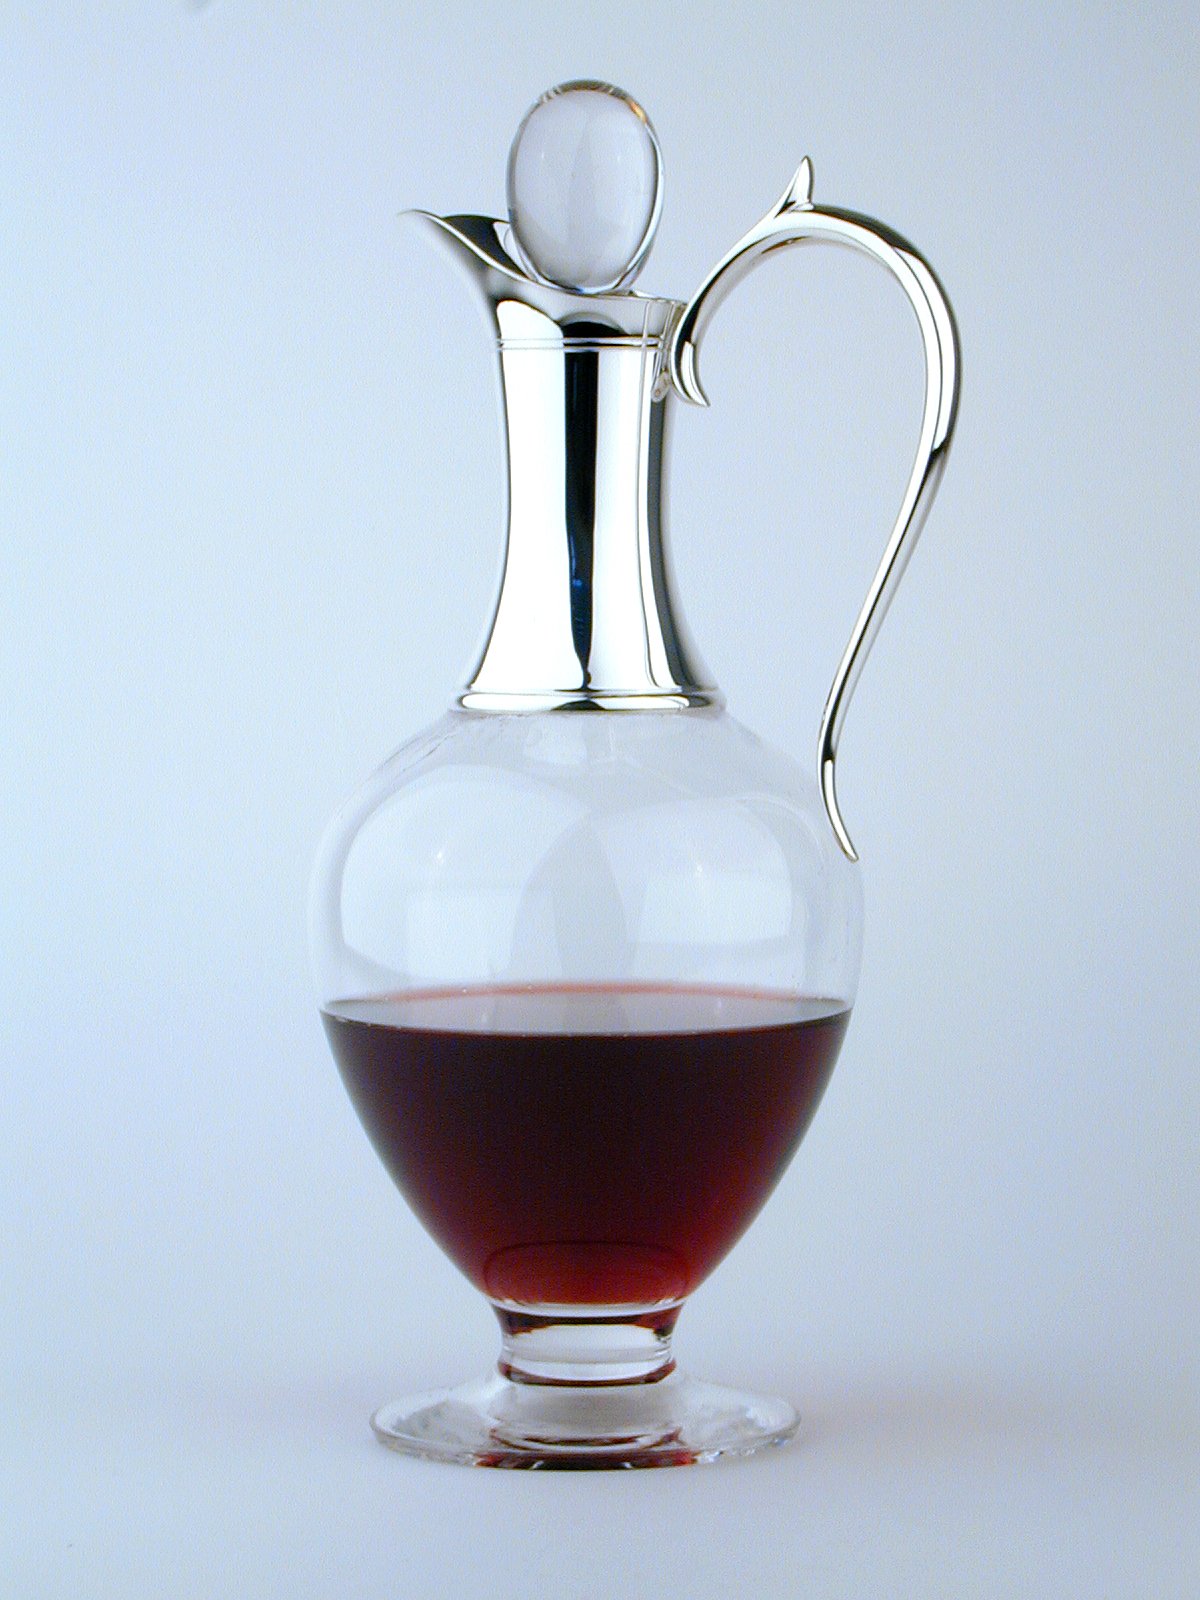 Silver & Dartington glass claret jug